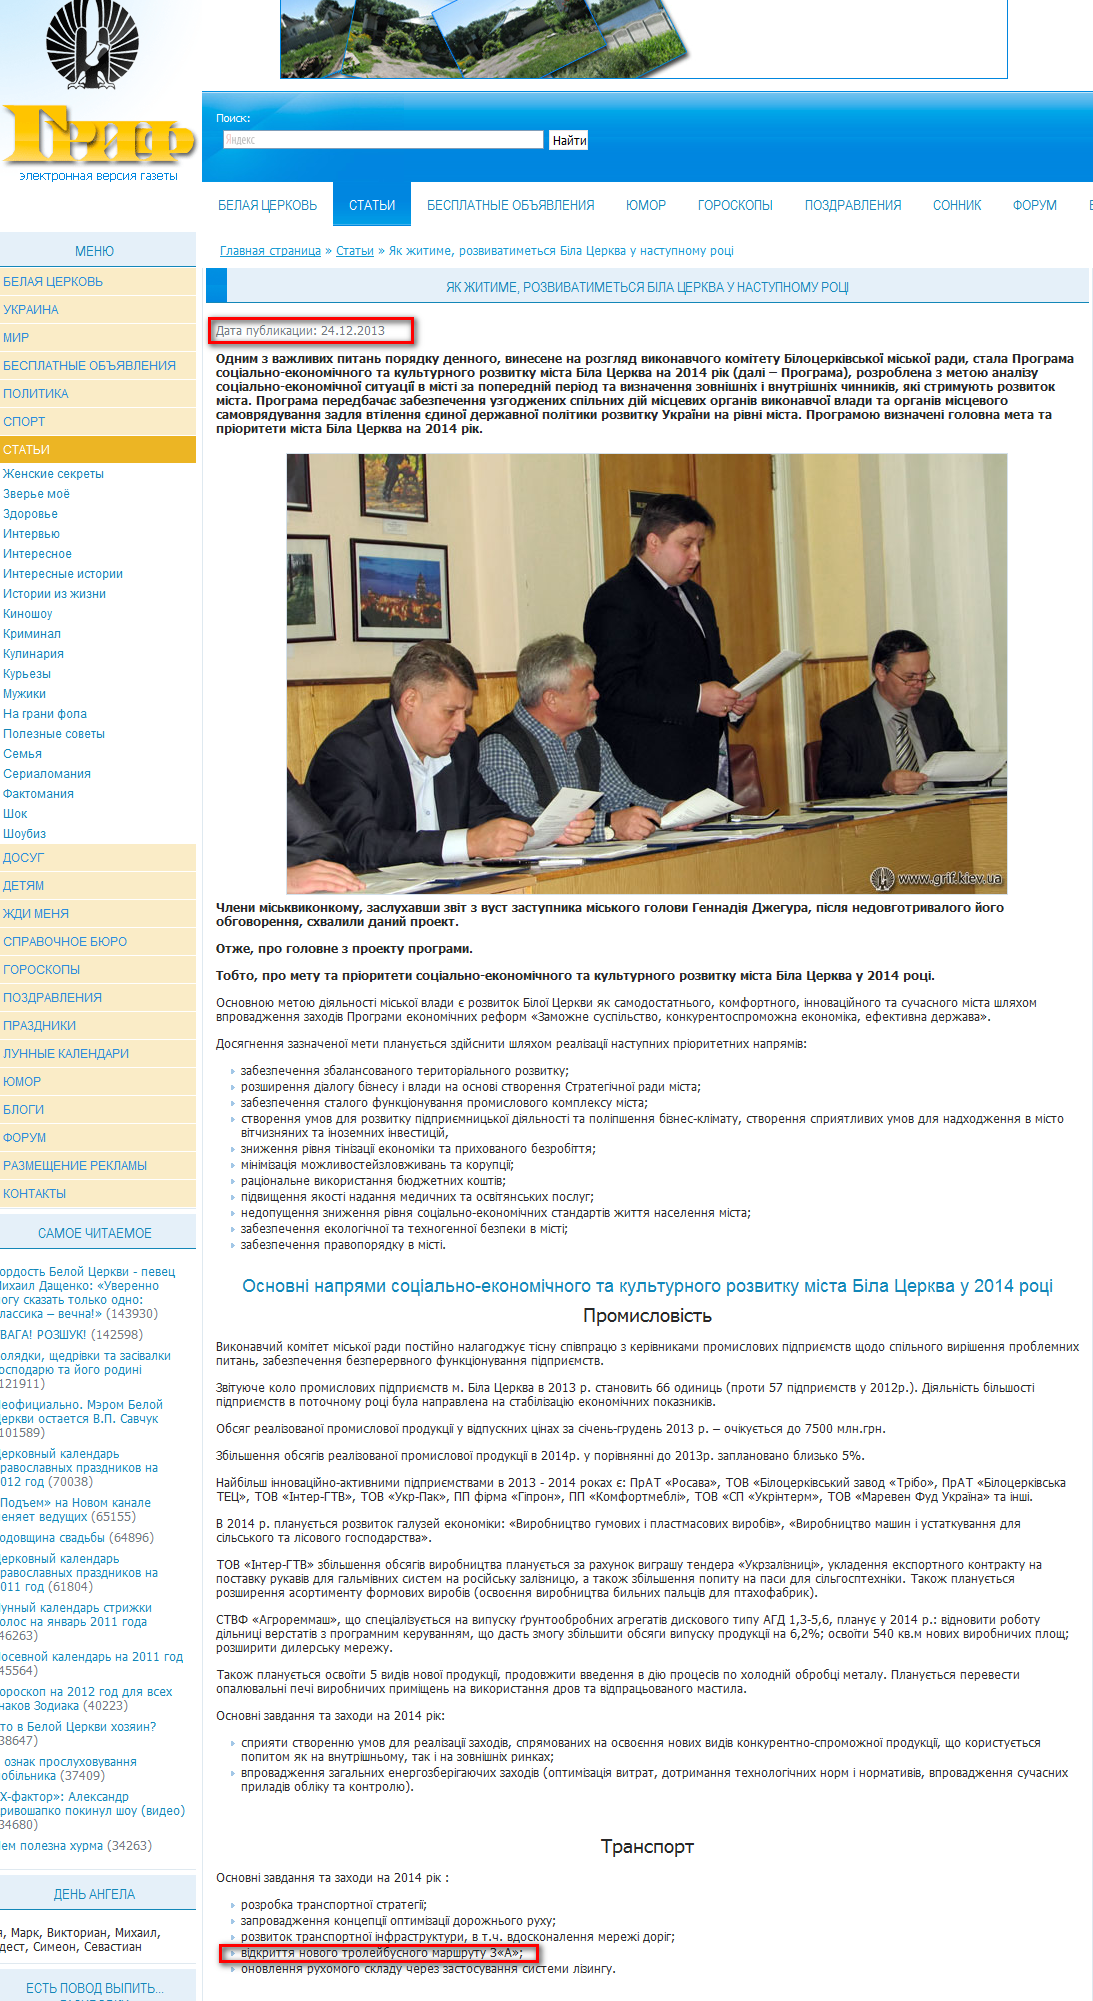 http://www.grif.kiev.ua/articles/23144.html